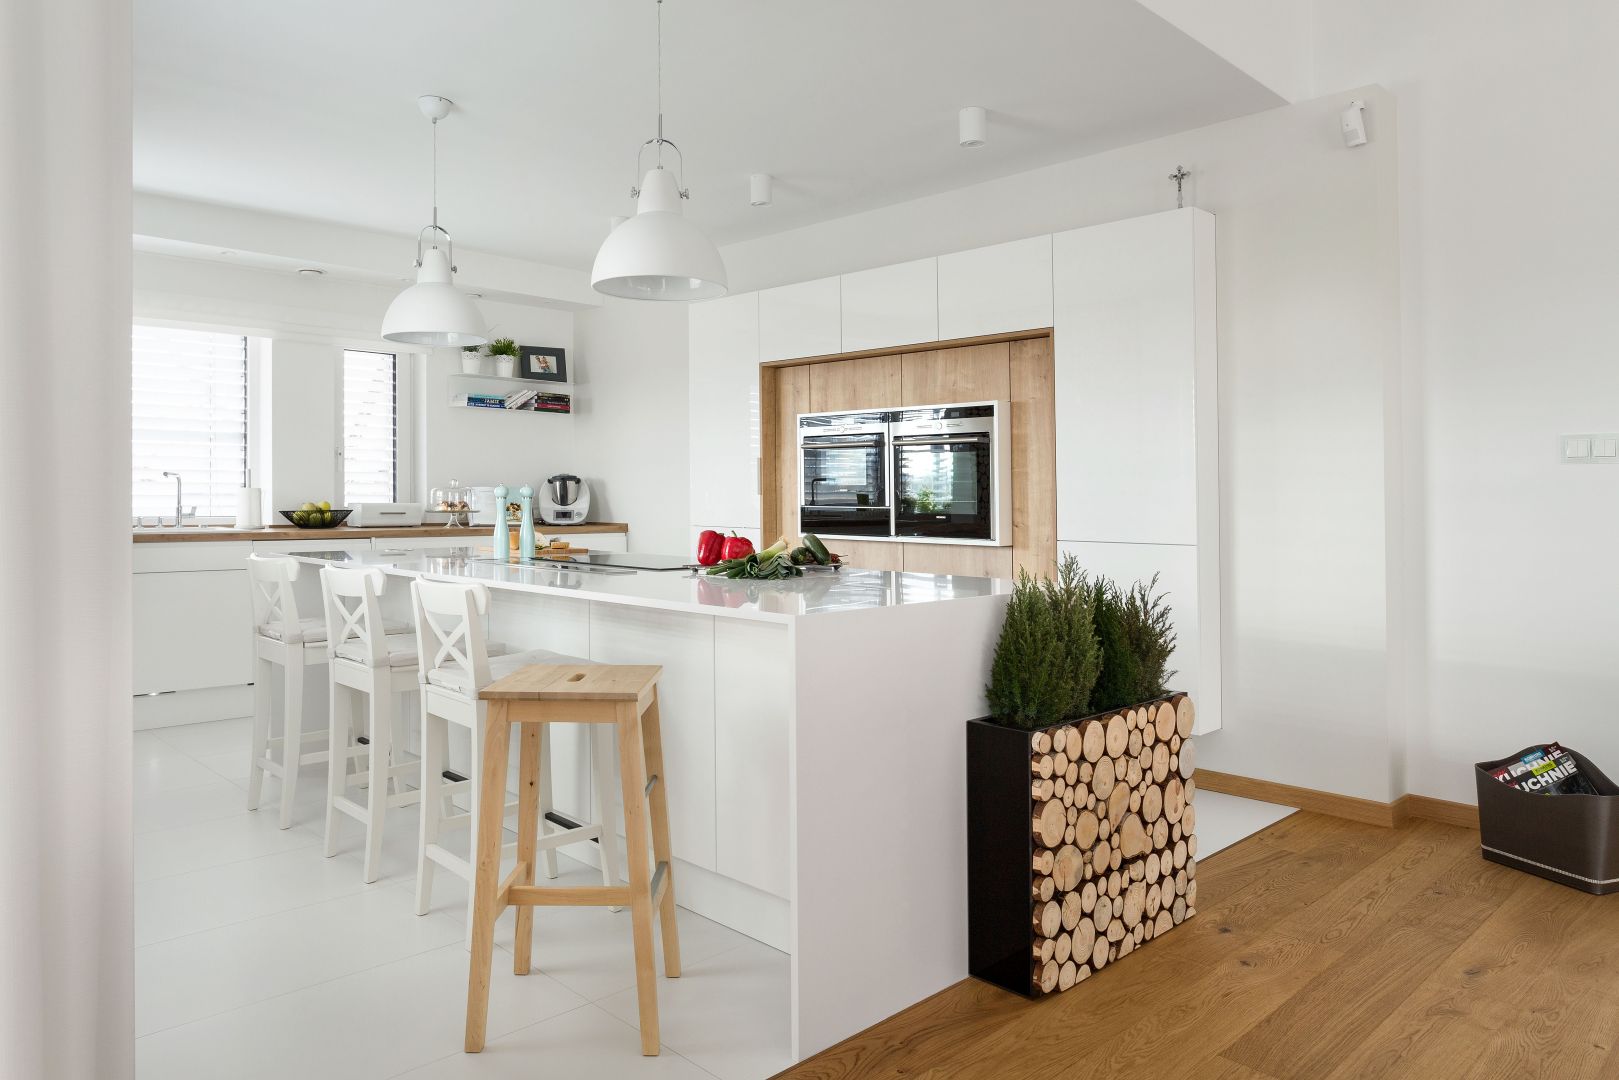 Biała kuchnia w minimalistycznym stylu sprawi, że wnętrze będzie świetliste i łagodne w odbiorze. W tym wnętrzu wyspa pełni rolę miejsca gotowania i przygotowywania posiłków. Umieszczono w niej okap wysuwany z blatu. Projekt: Małgorzata Błaszczak. Fot. Artur Krupa